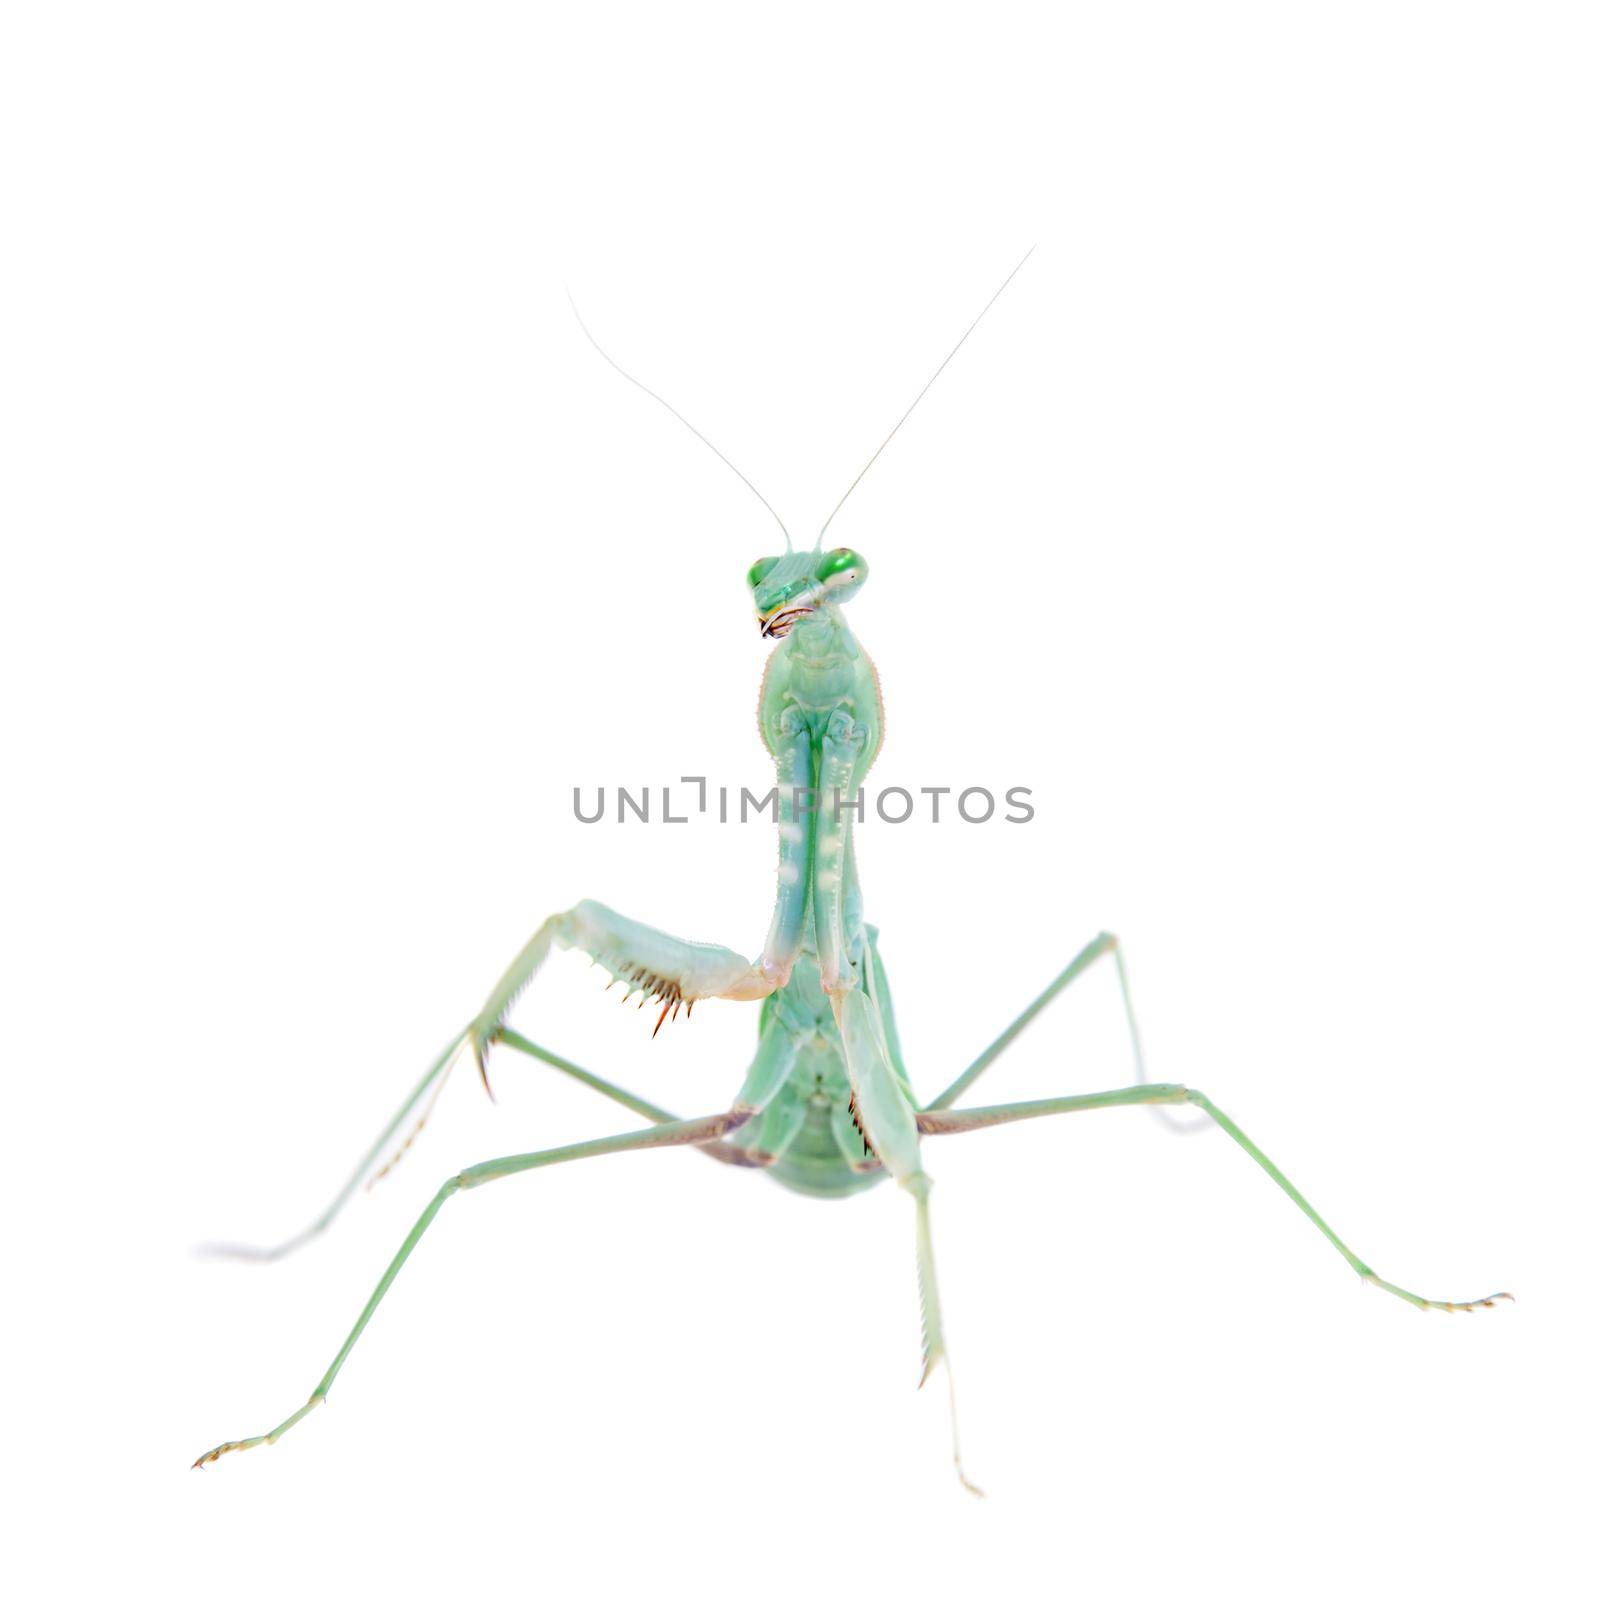 Sphodromantis viridis, or common names Giant african mantis isolates on white background